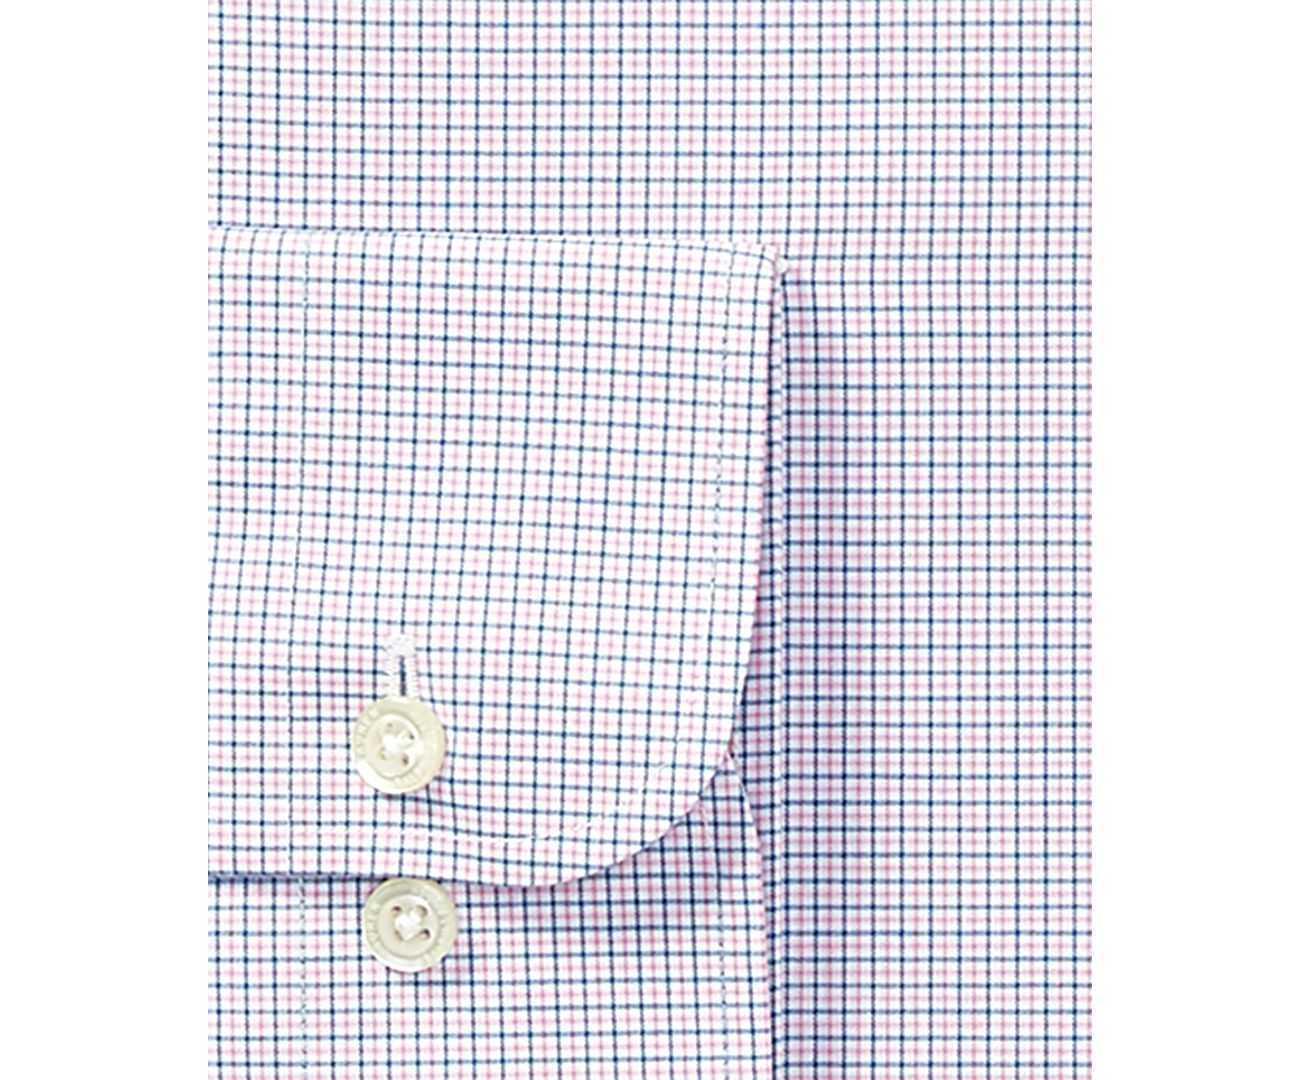 Ralph Lauren Men’s Dress Shirt (Pink/Blue, 17.5×36/37) - image 2 of 2